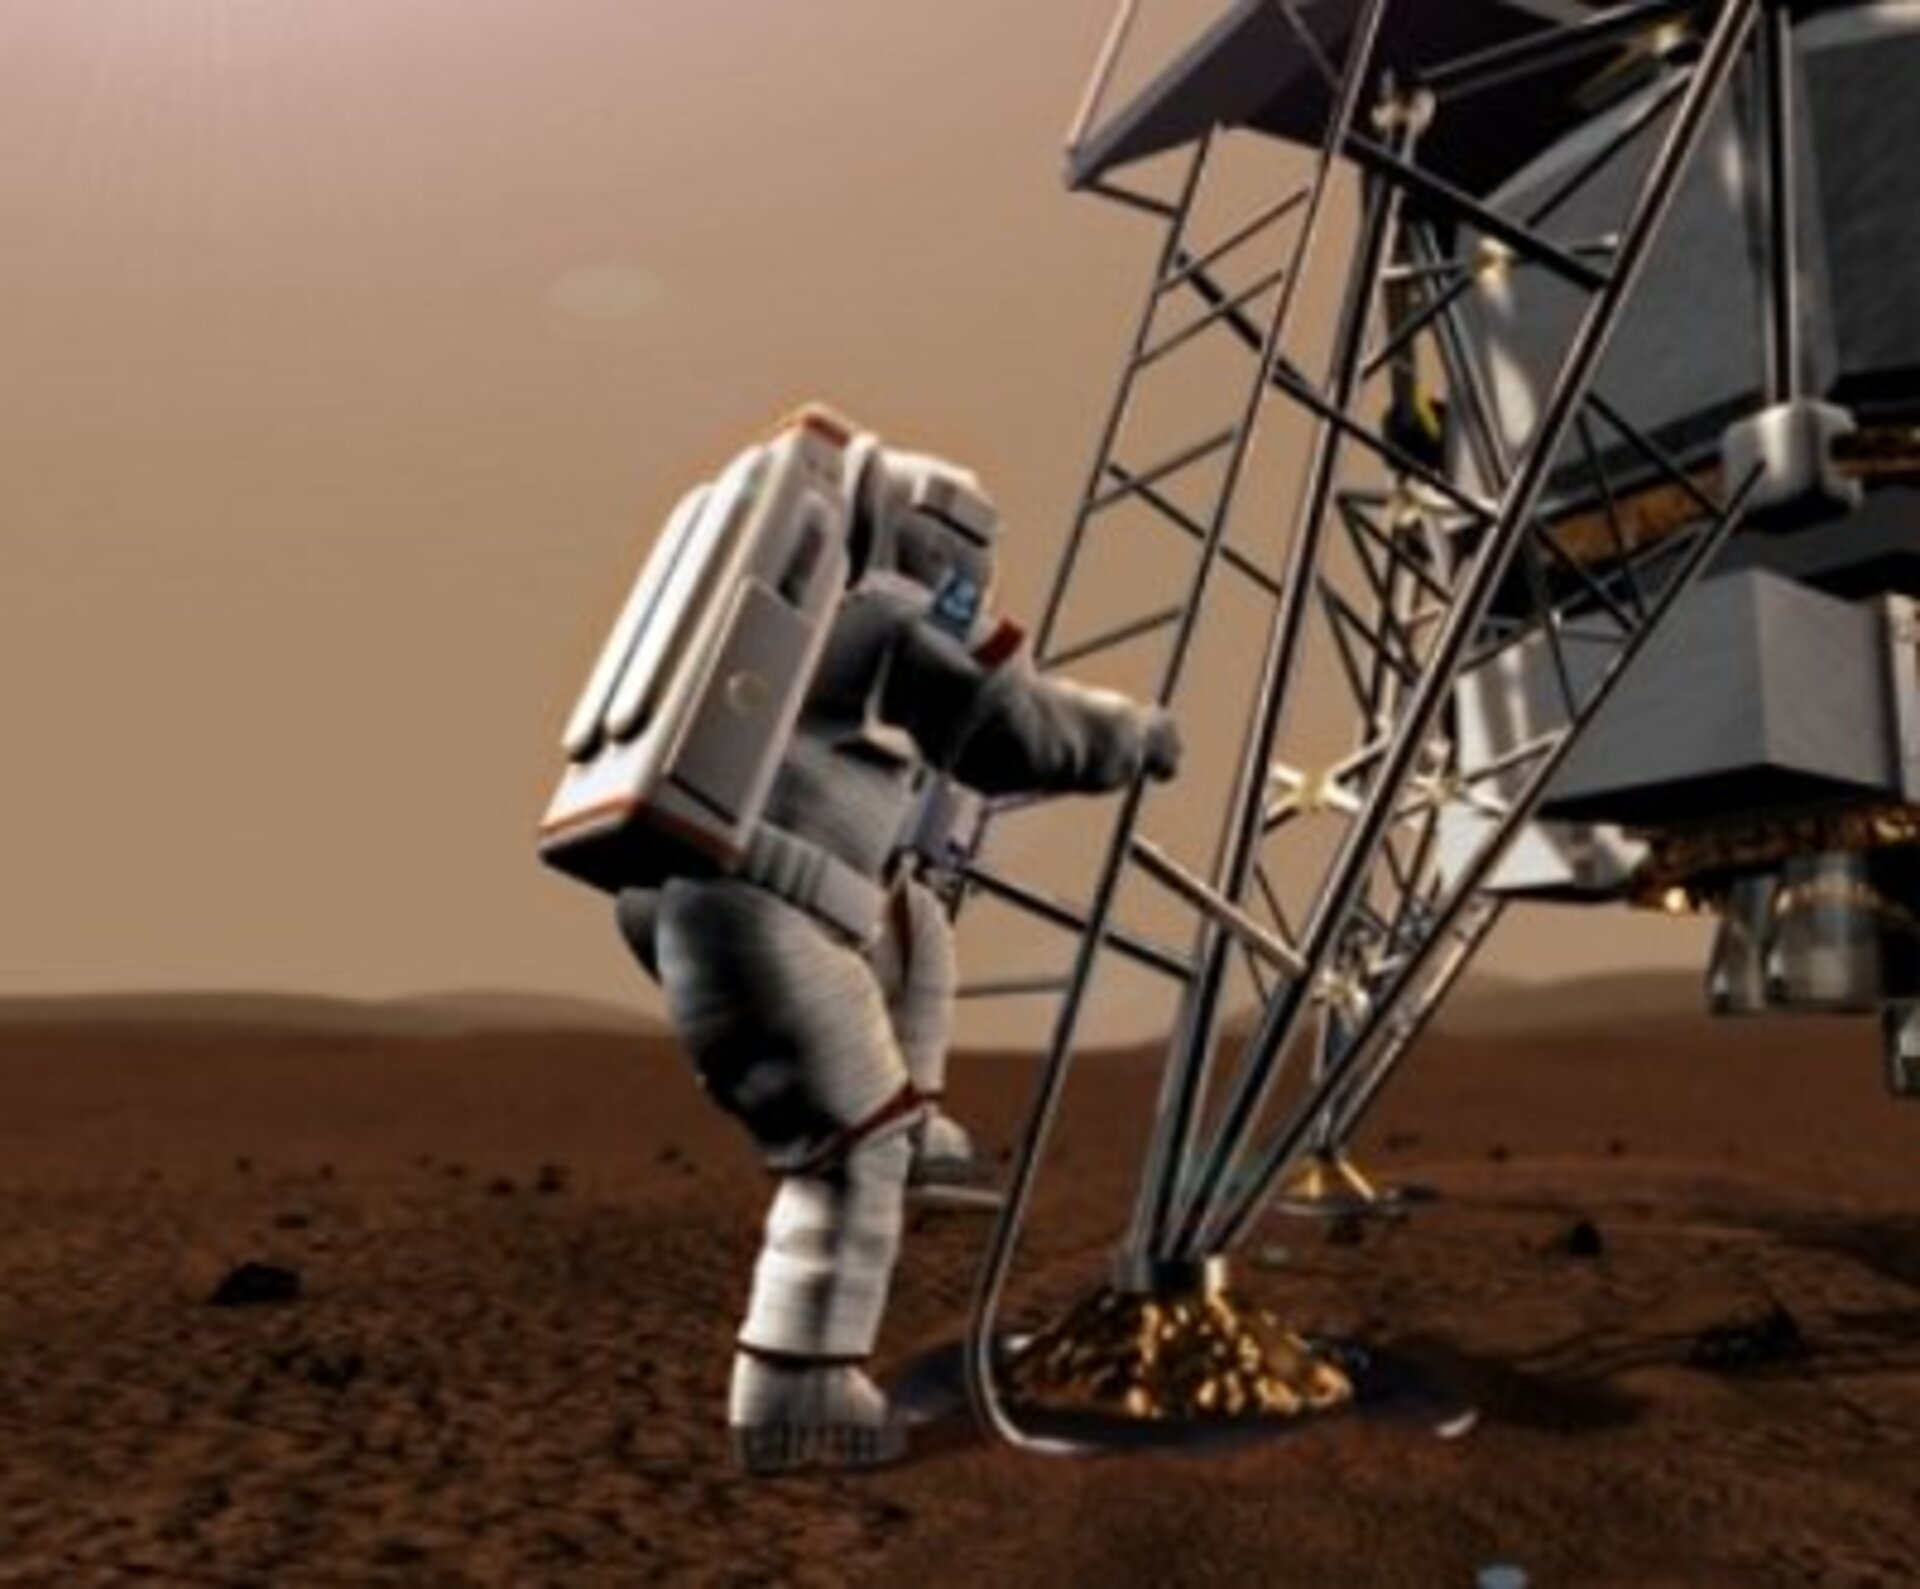 ESA participeert in het onderzoek om zich voor te bereiden op een échte missie naar Mars in de toekomst